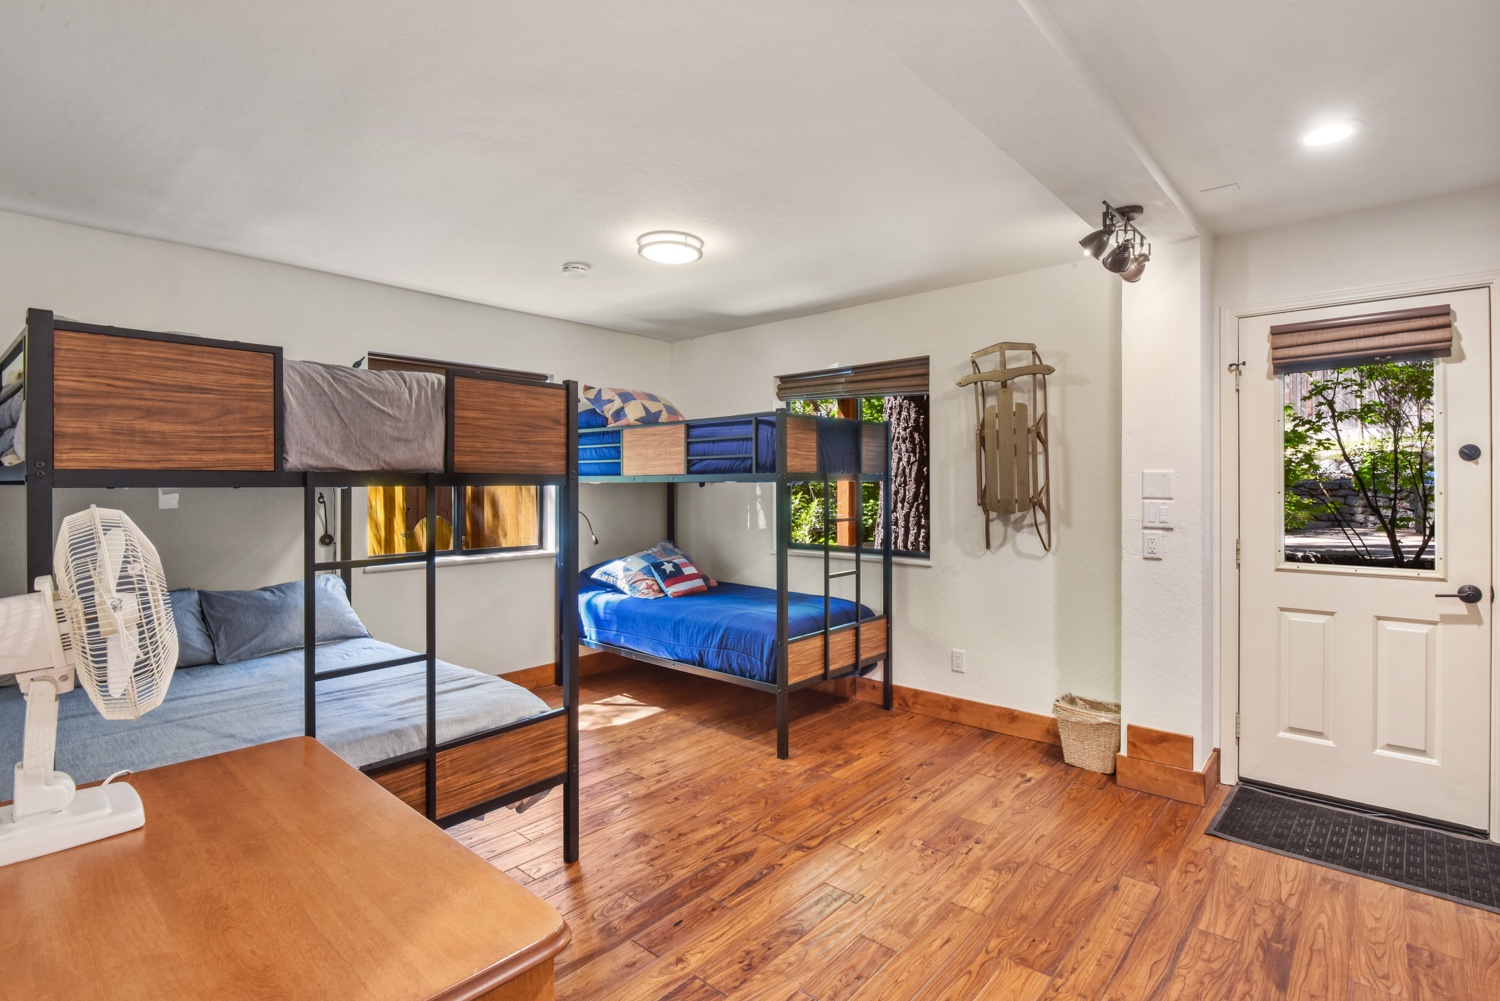 4th bedroom: Twin bunkbeds, great for kids (ground floor)